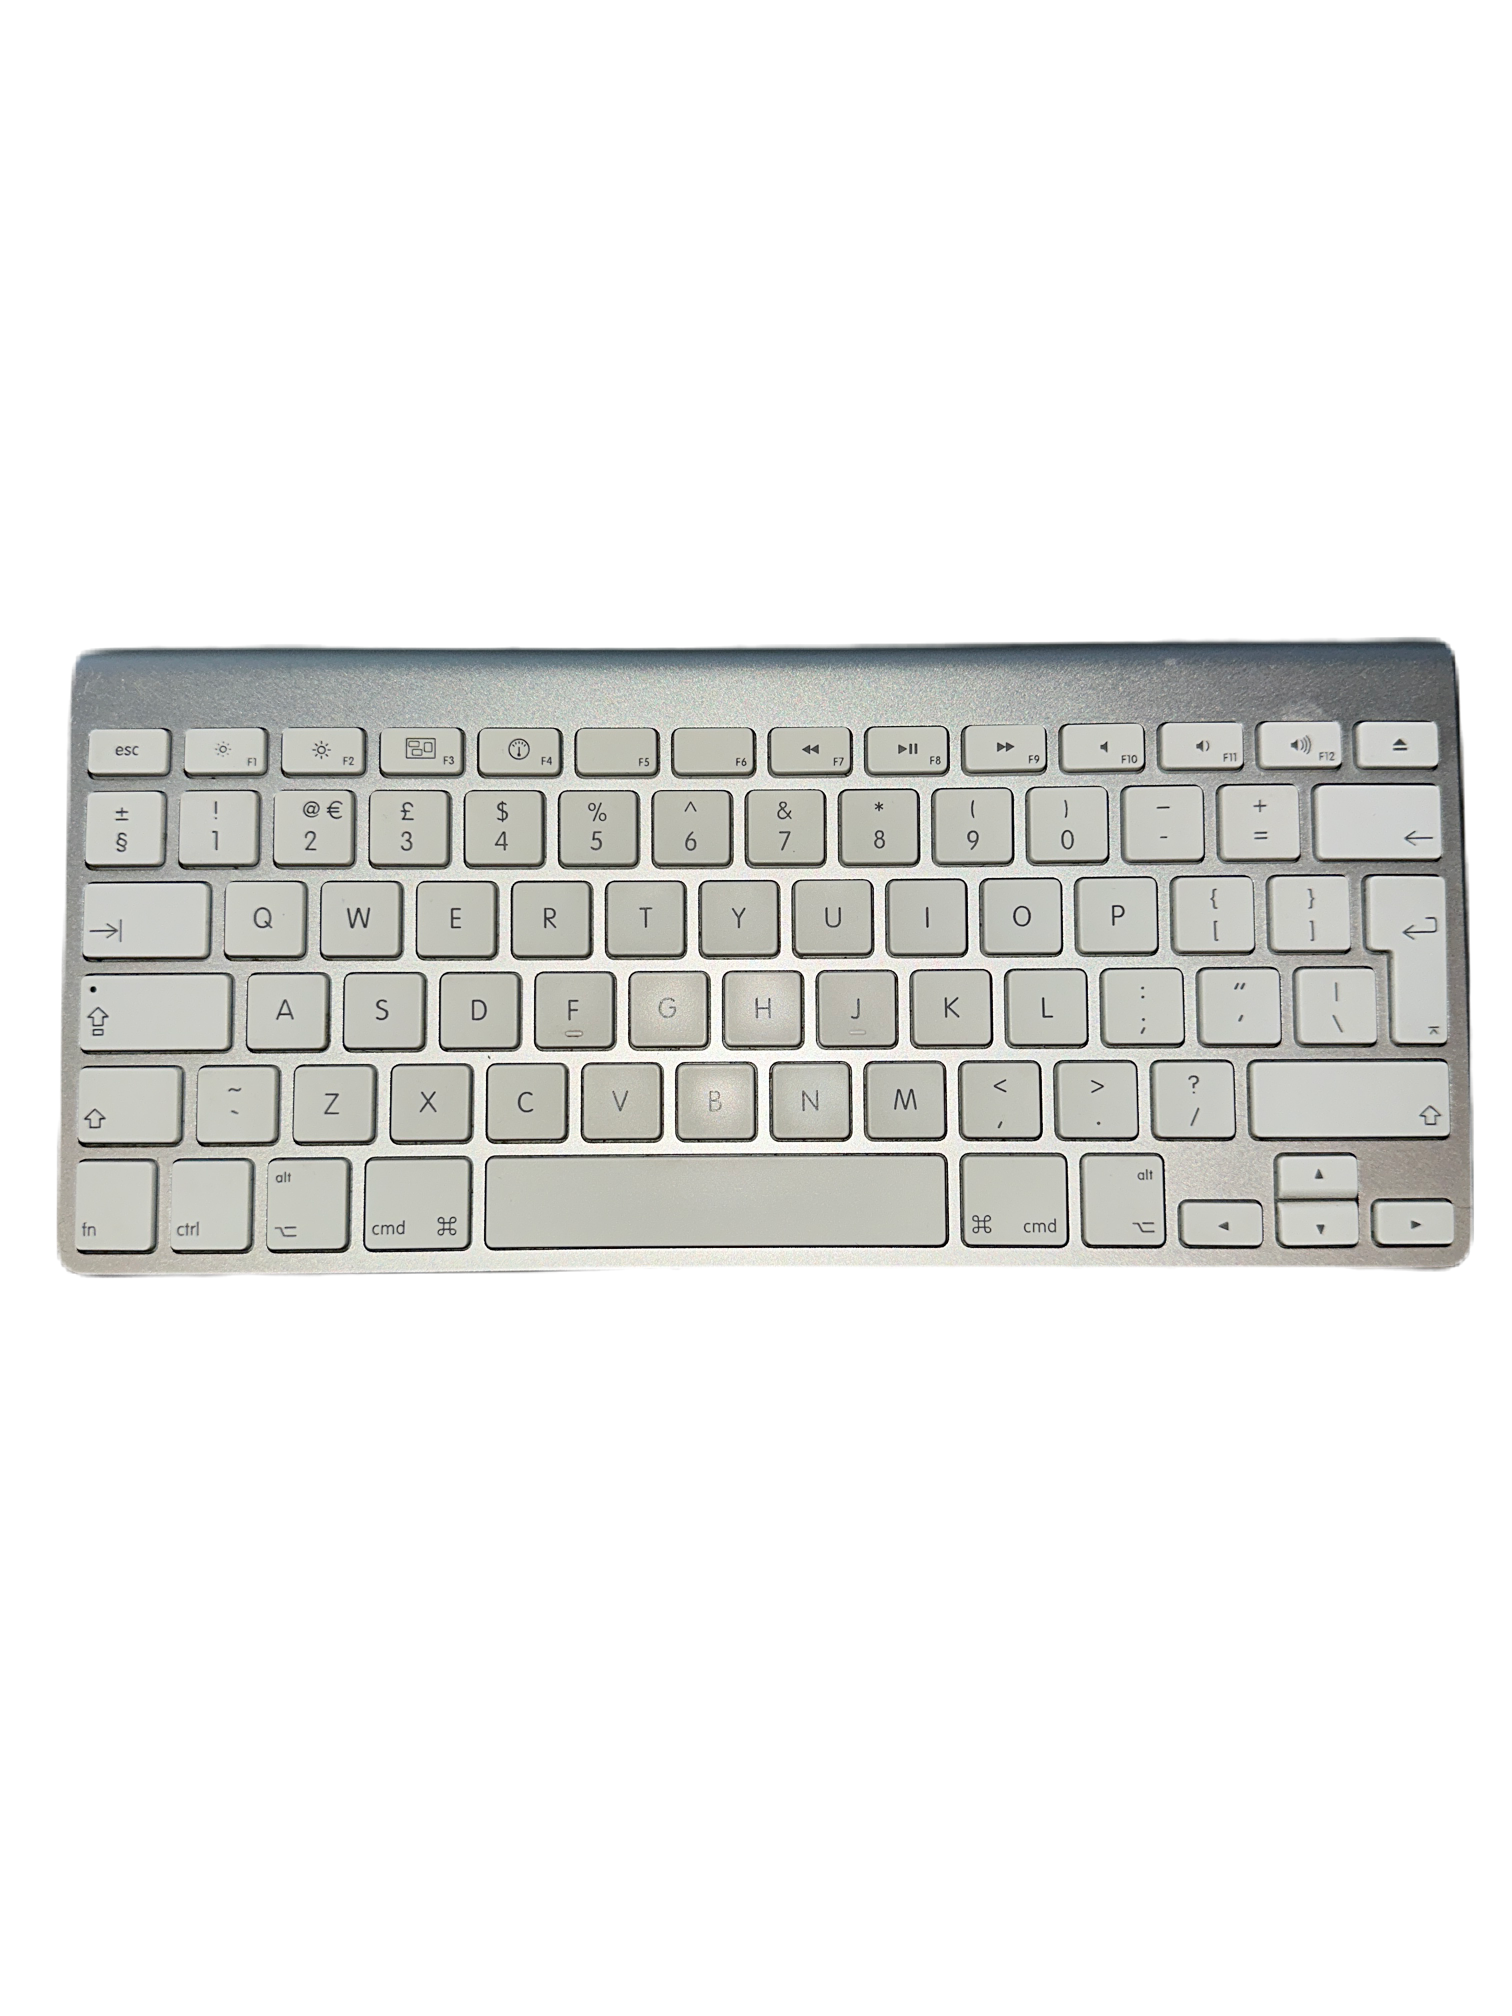 Apple Keyboard A1255 - Wireless Keyboard